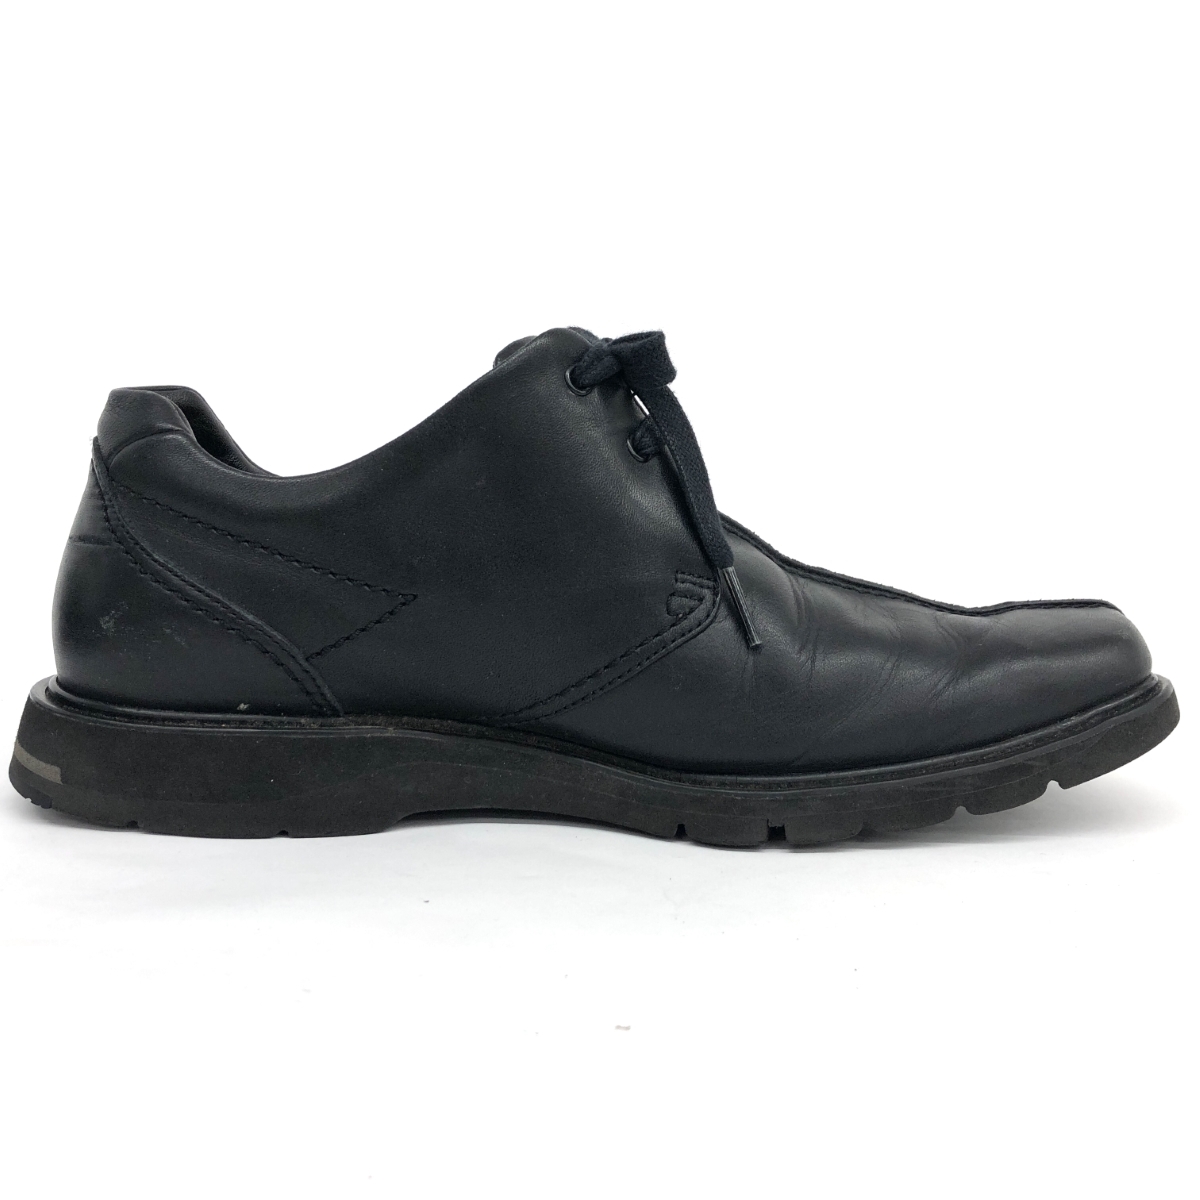 *pedalapedala Roo do обувь 25.5* черный мужской обувь обувь shoes кожа Asics ходьба 